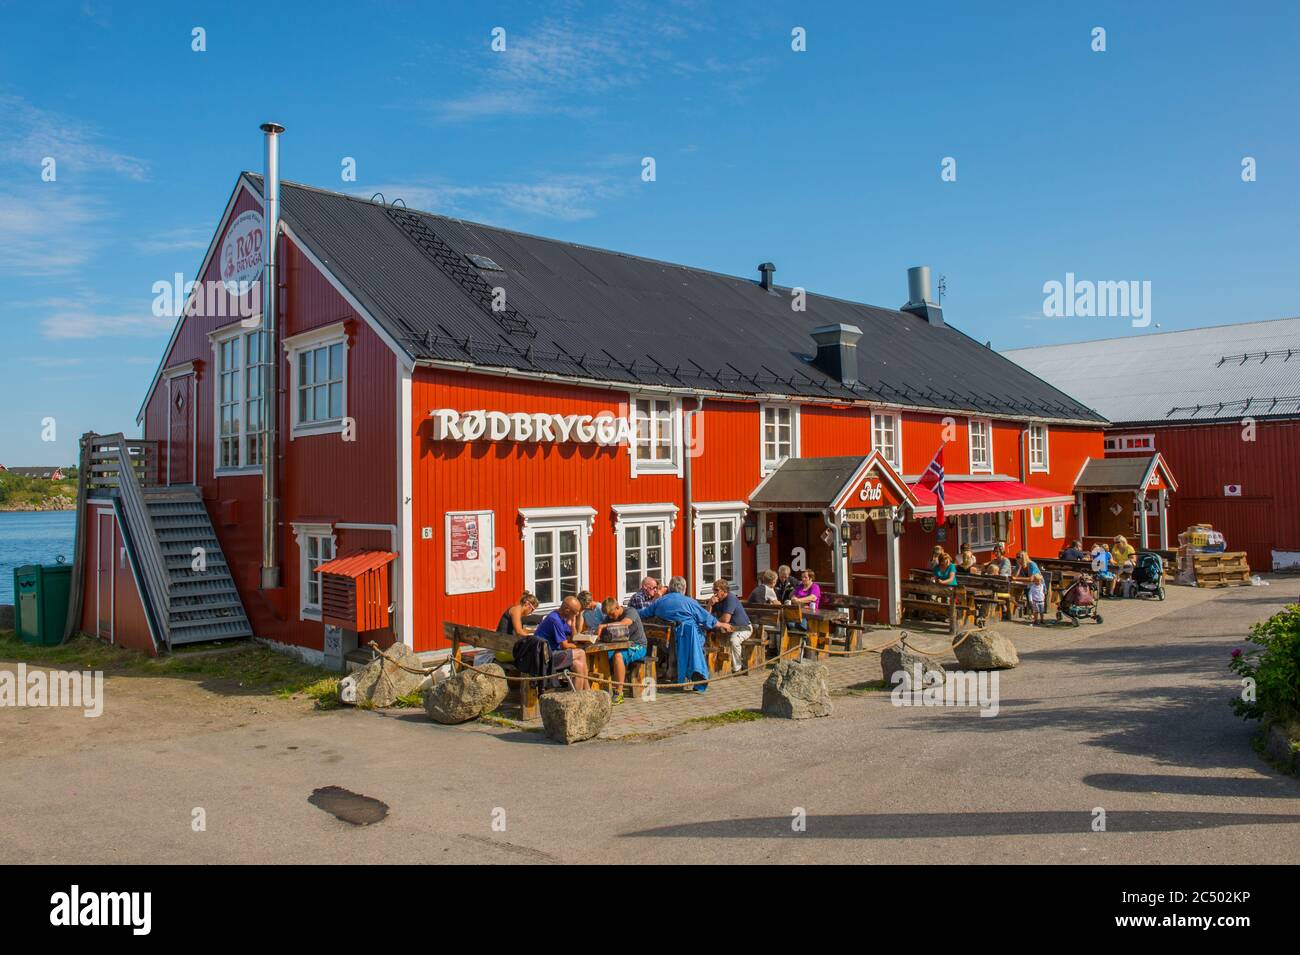 Persone che godono del sole fuori di un pub e ristorante a Stokmarknes, una piccola città nel comune di Hadsel nella contea di Nordland, isole Lofoten, Foto Stock